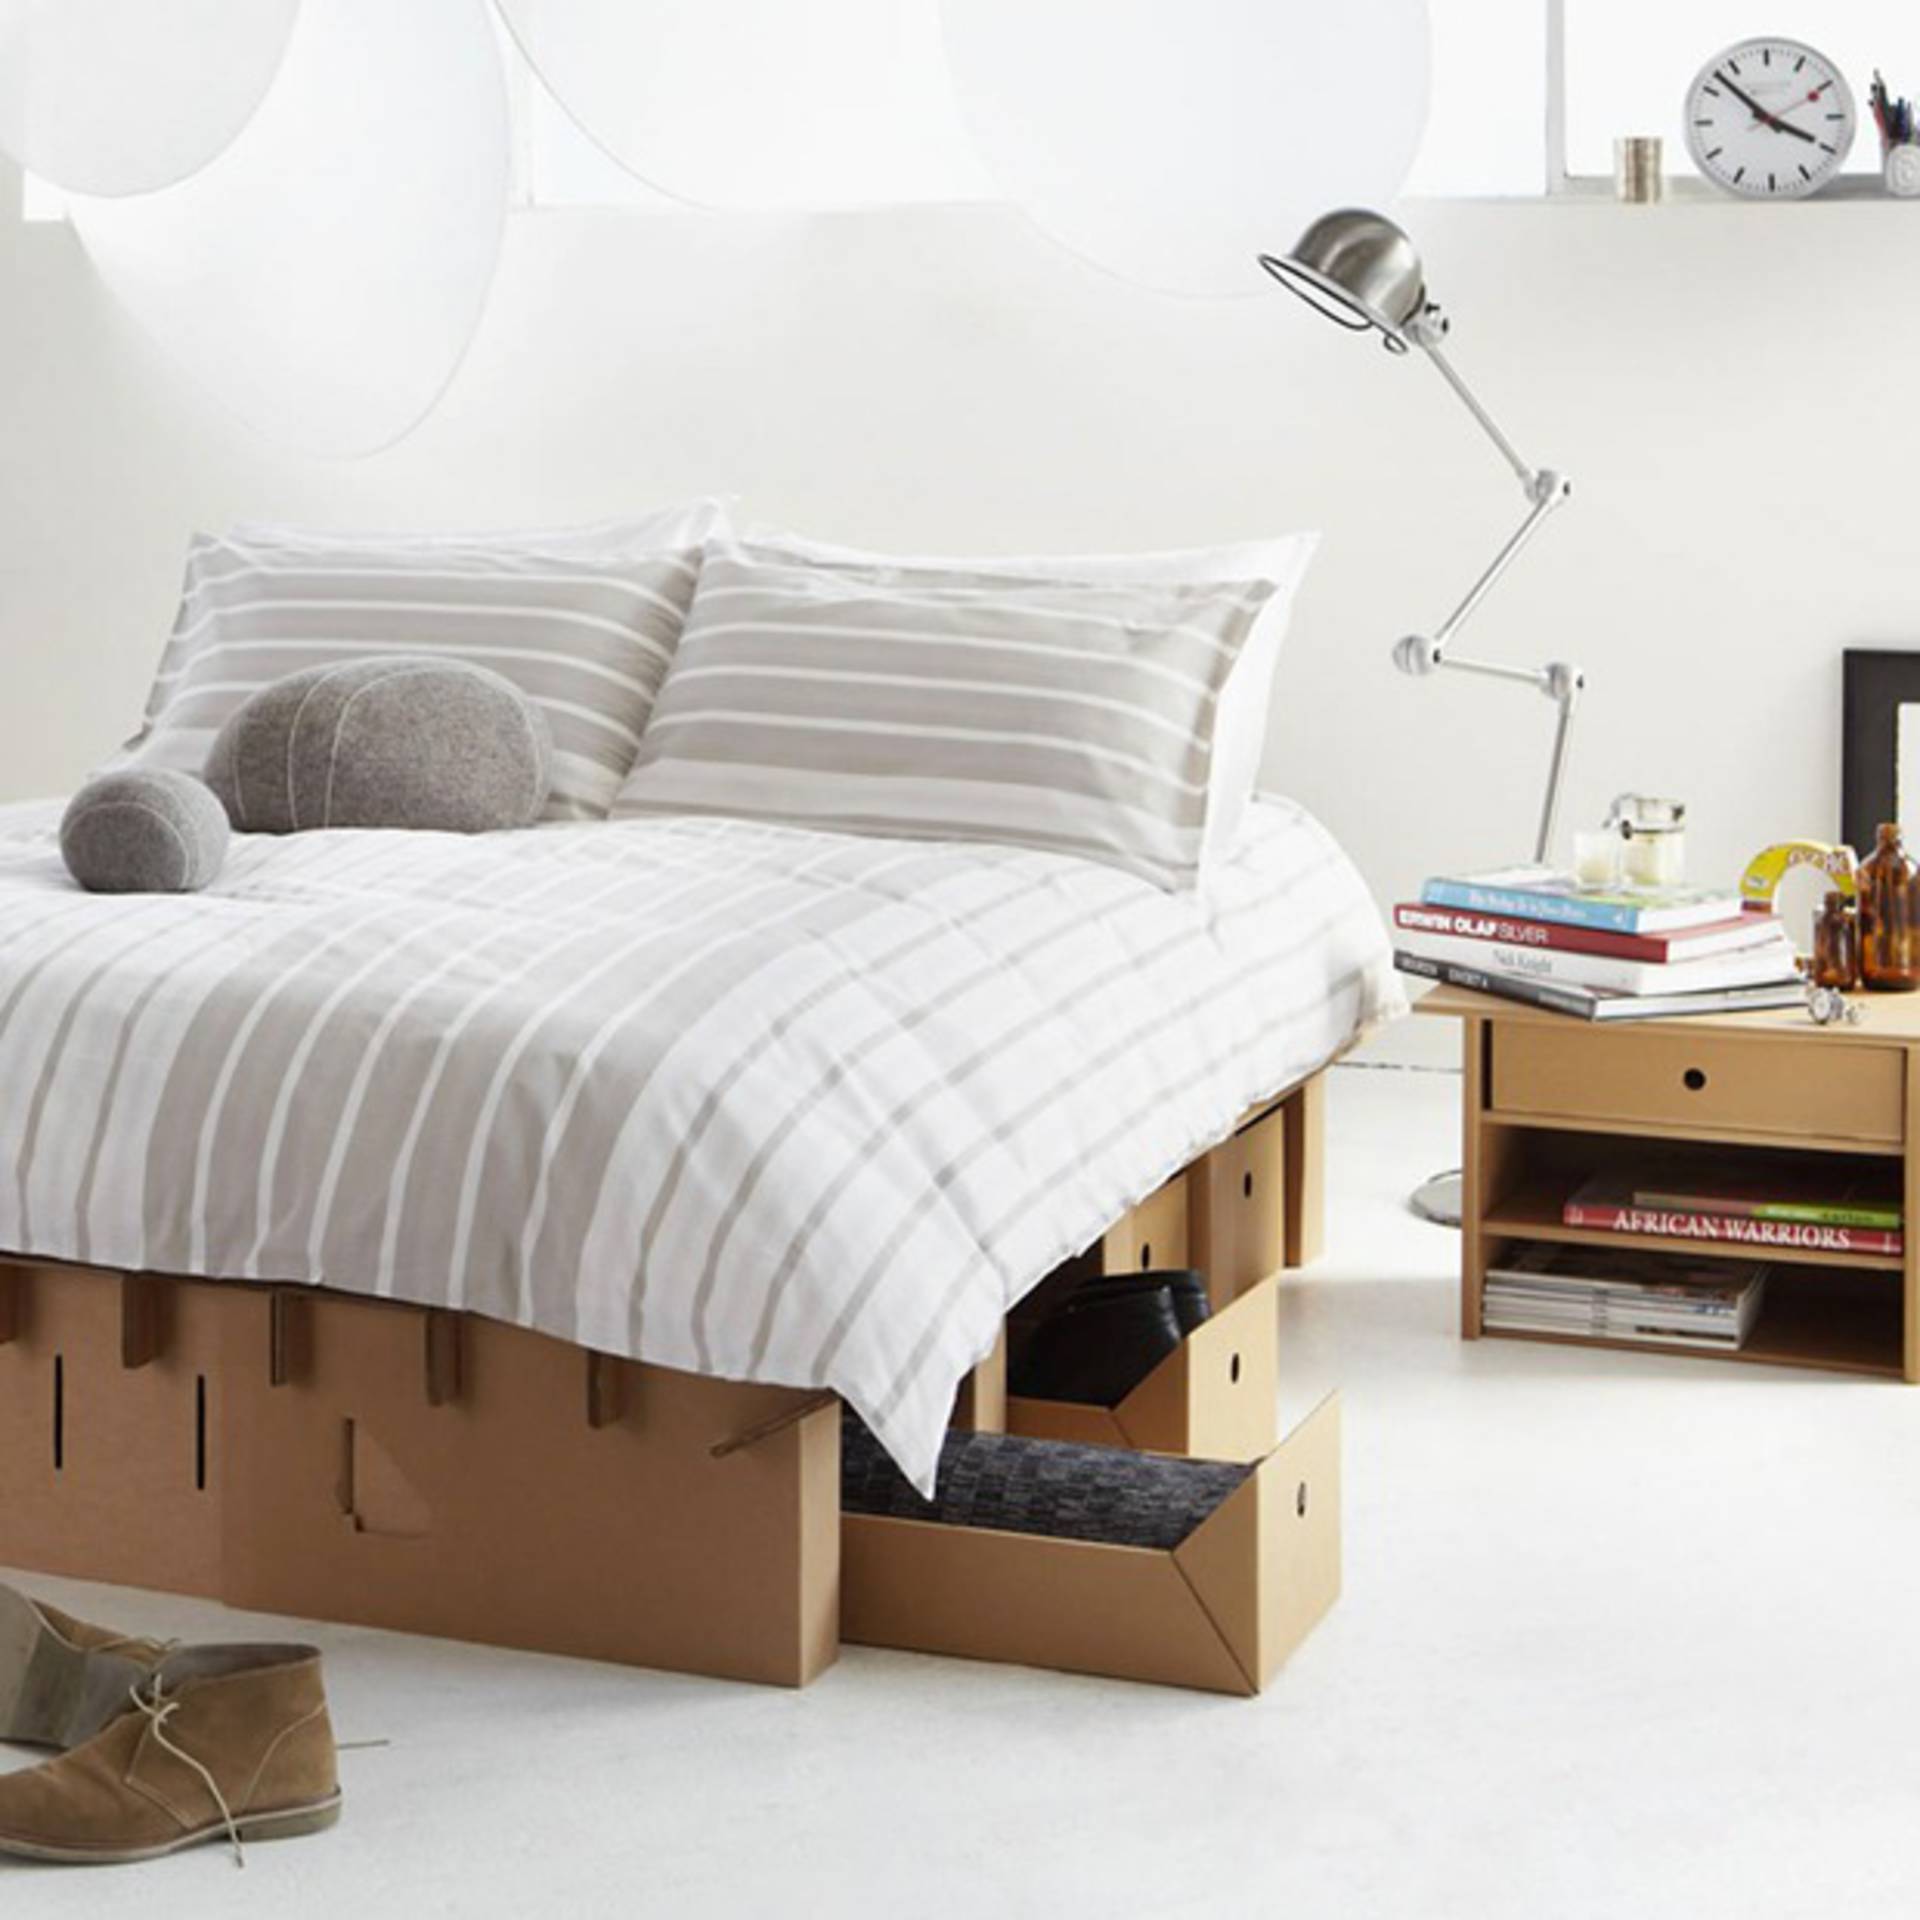 Дом сна мебель. Кровать из картона. Кровать из гофрокартона. Кровать складная картонная. Кровать из картонных коробок.